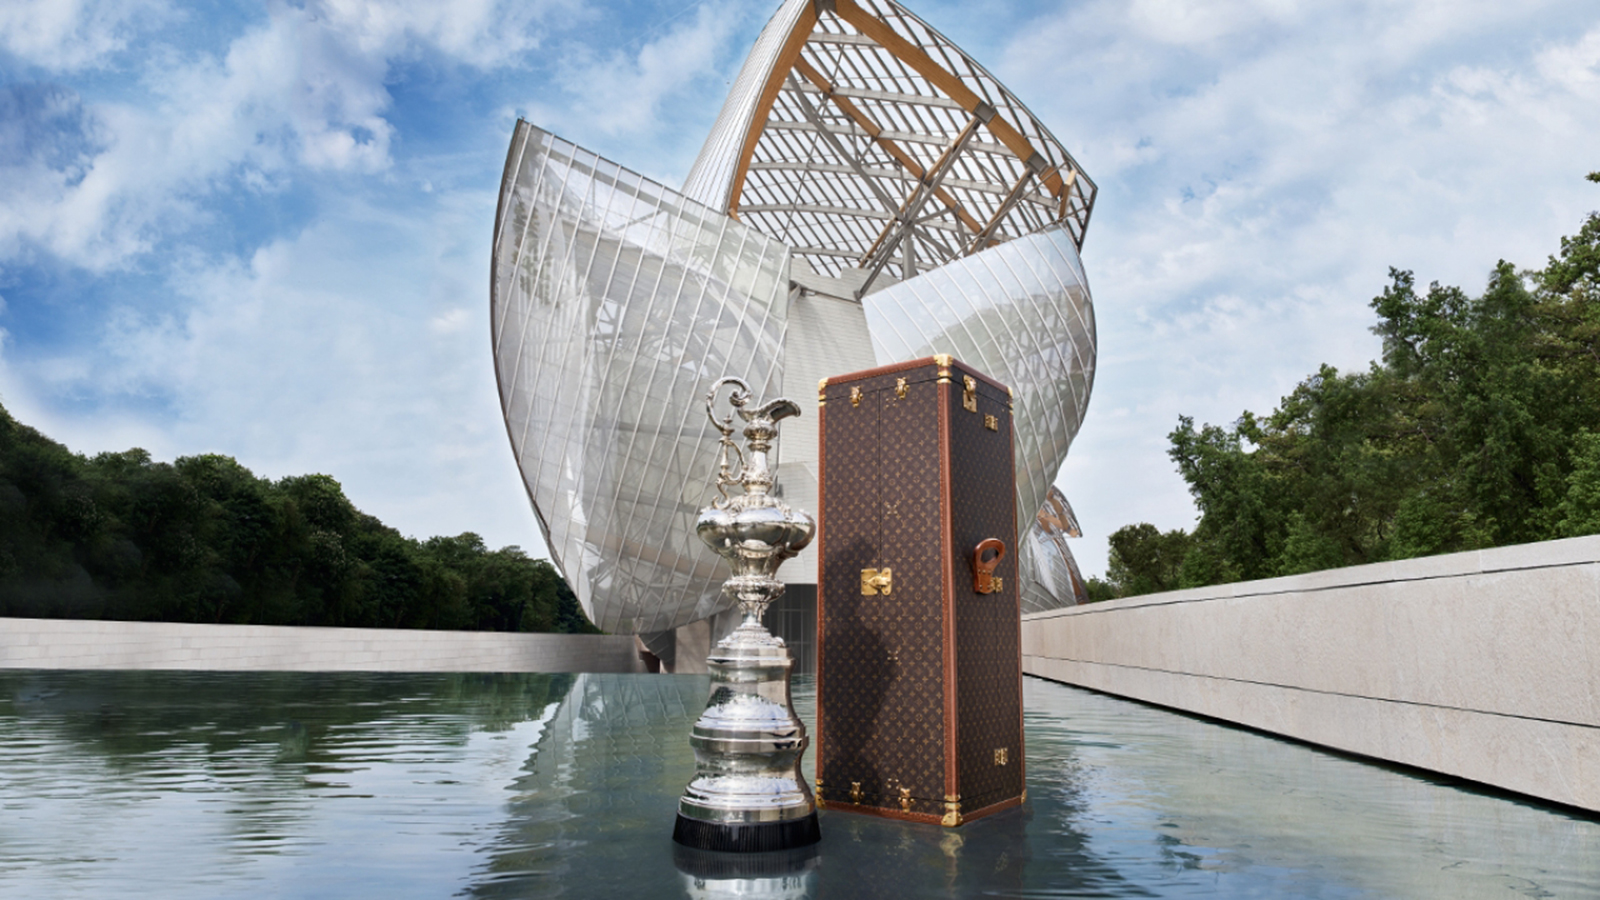 Louis Vuitton unveils bespoke America's Cup trophy case